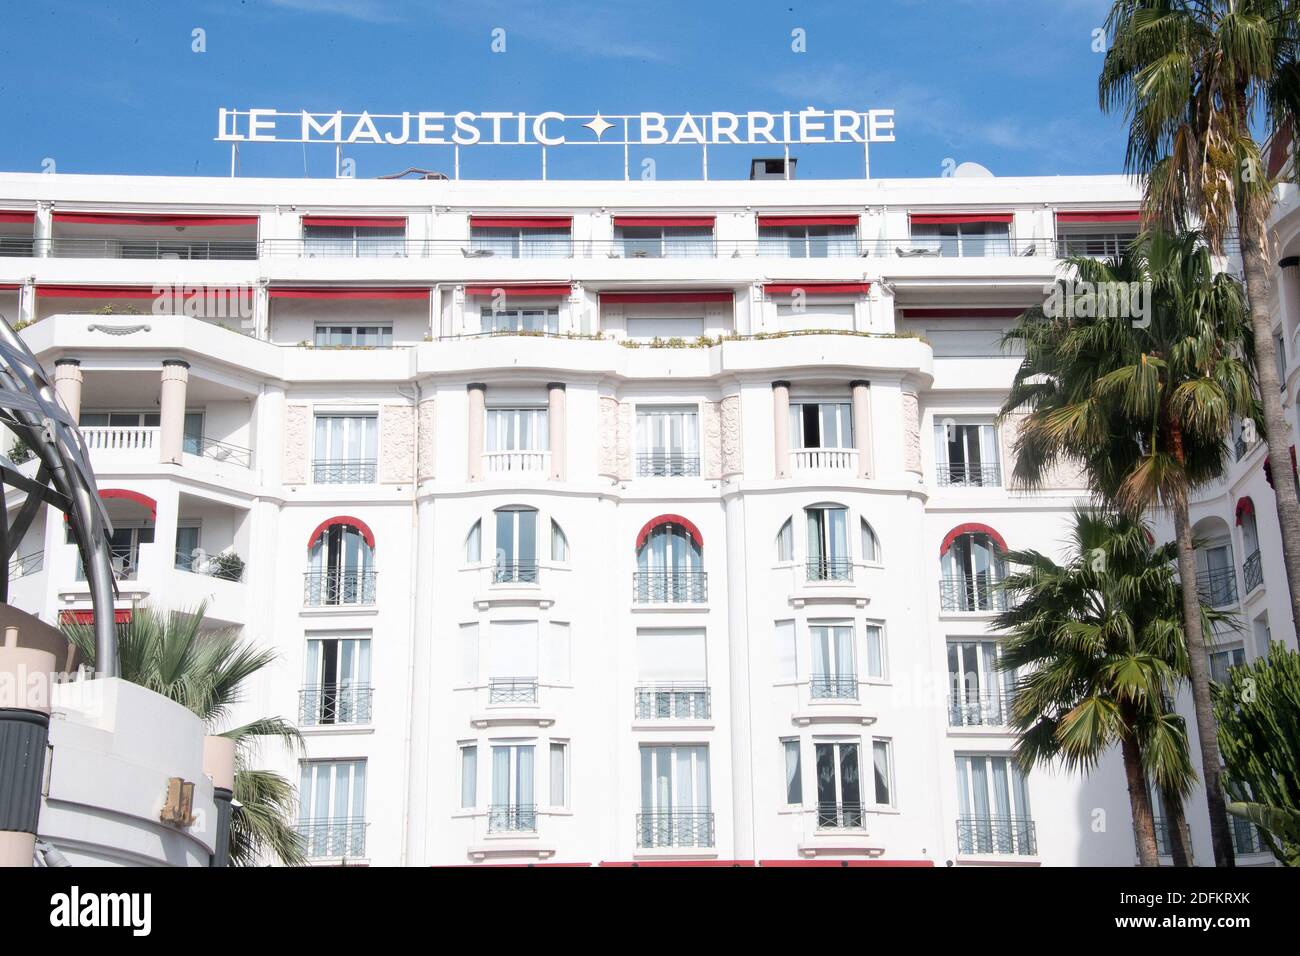 Un segno del negozio LE MAJESTIC BARRIERE Hotel, il 13 ottobre 2020 a Cannes, Francia. Foto di David Niviere/ABACAPRESS.COM Foto Stock